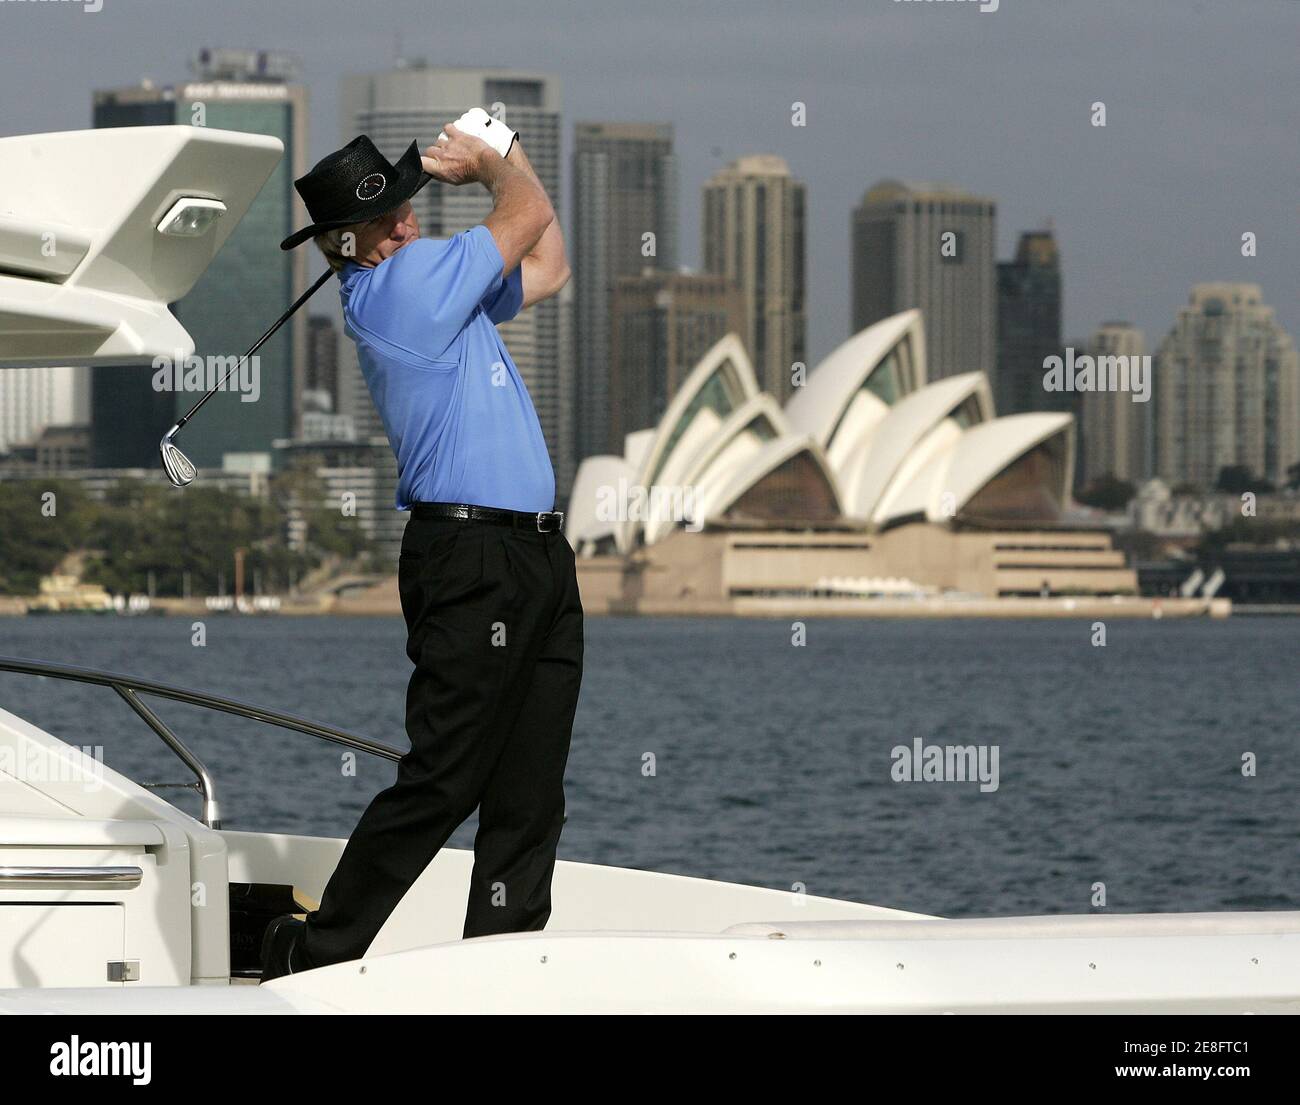 Der australische Golfer Greg Norman begleitet ihn während seines Swings von der Rückseite einer Luxusyacht am Sydney Harbour am 11. Mai 2006. Norman förderte die Australian Open Golf Championship, die in Sydney vom 13. Bis 19. November stattfinden soll. REUTERS/will Burgess Stockfoto